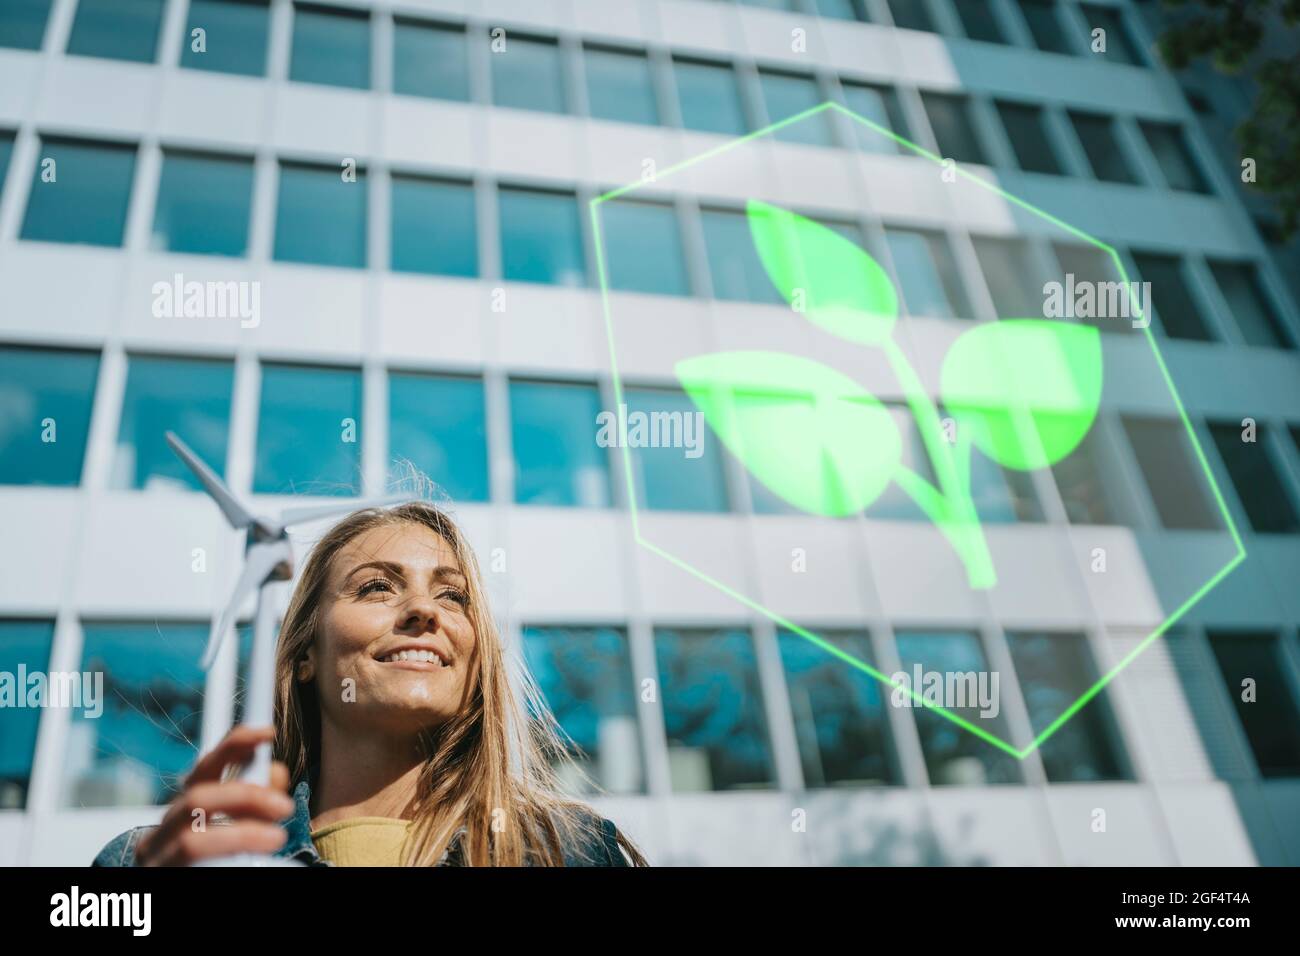 Femme souriante avec le modèle de moulin à vent regardant le logo de plante près du bâtiment Banque D'Images